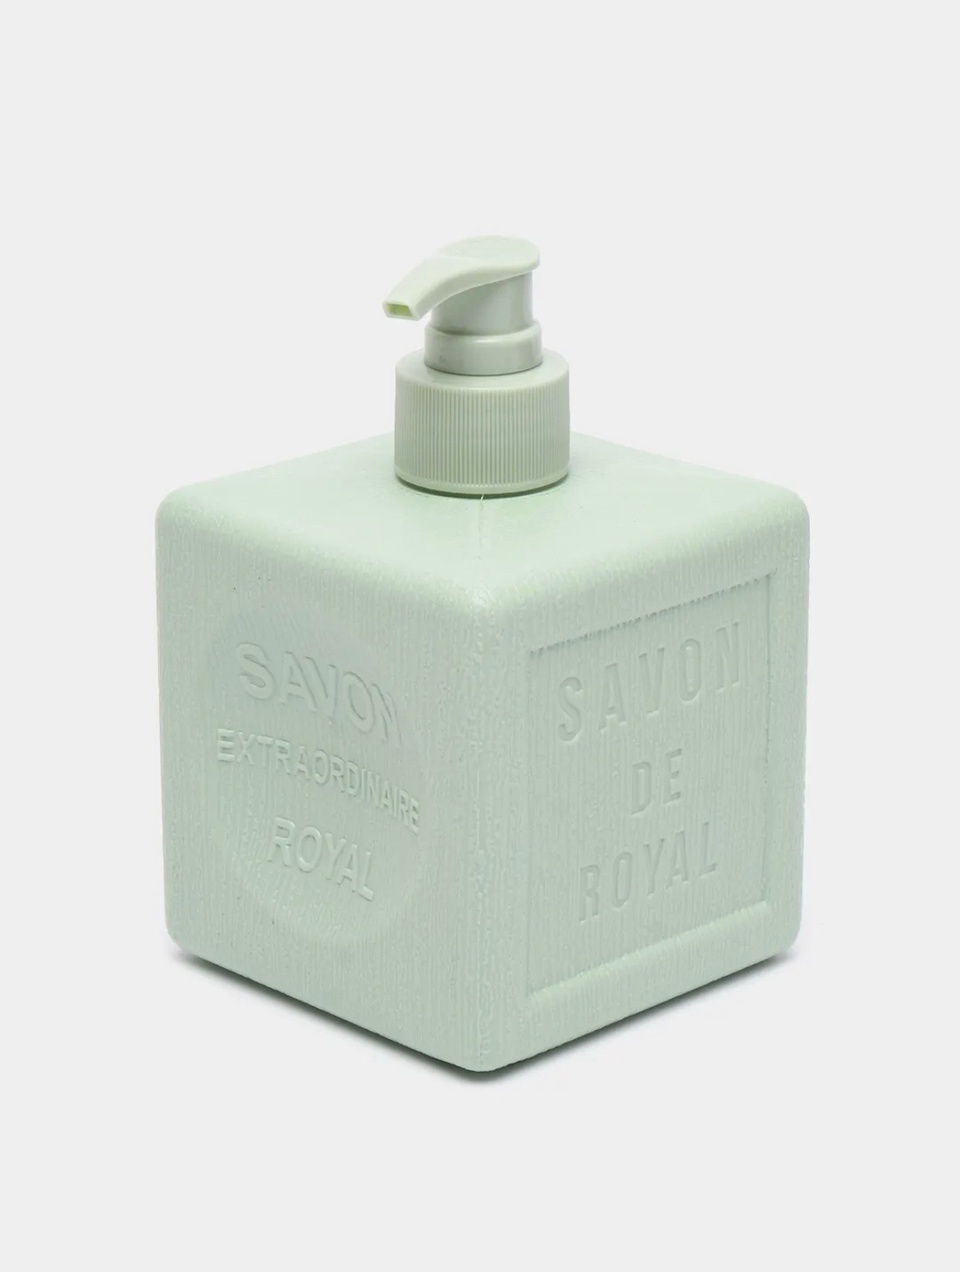 Savon De Royal Жидкое мыло «Зеленый куб», серия «Прованс» - 200 ₽, заказать онлайн.